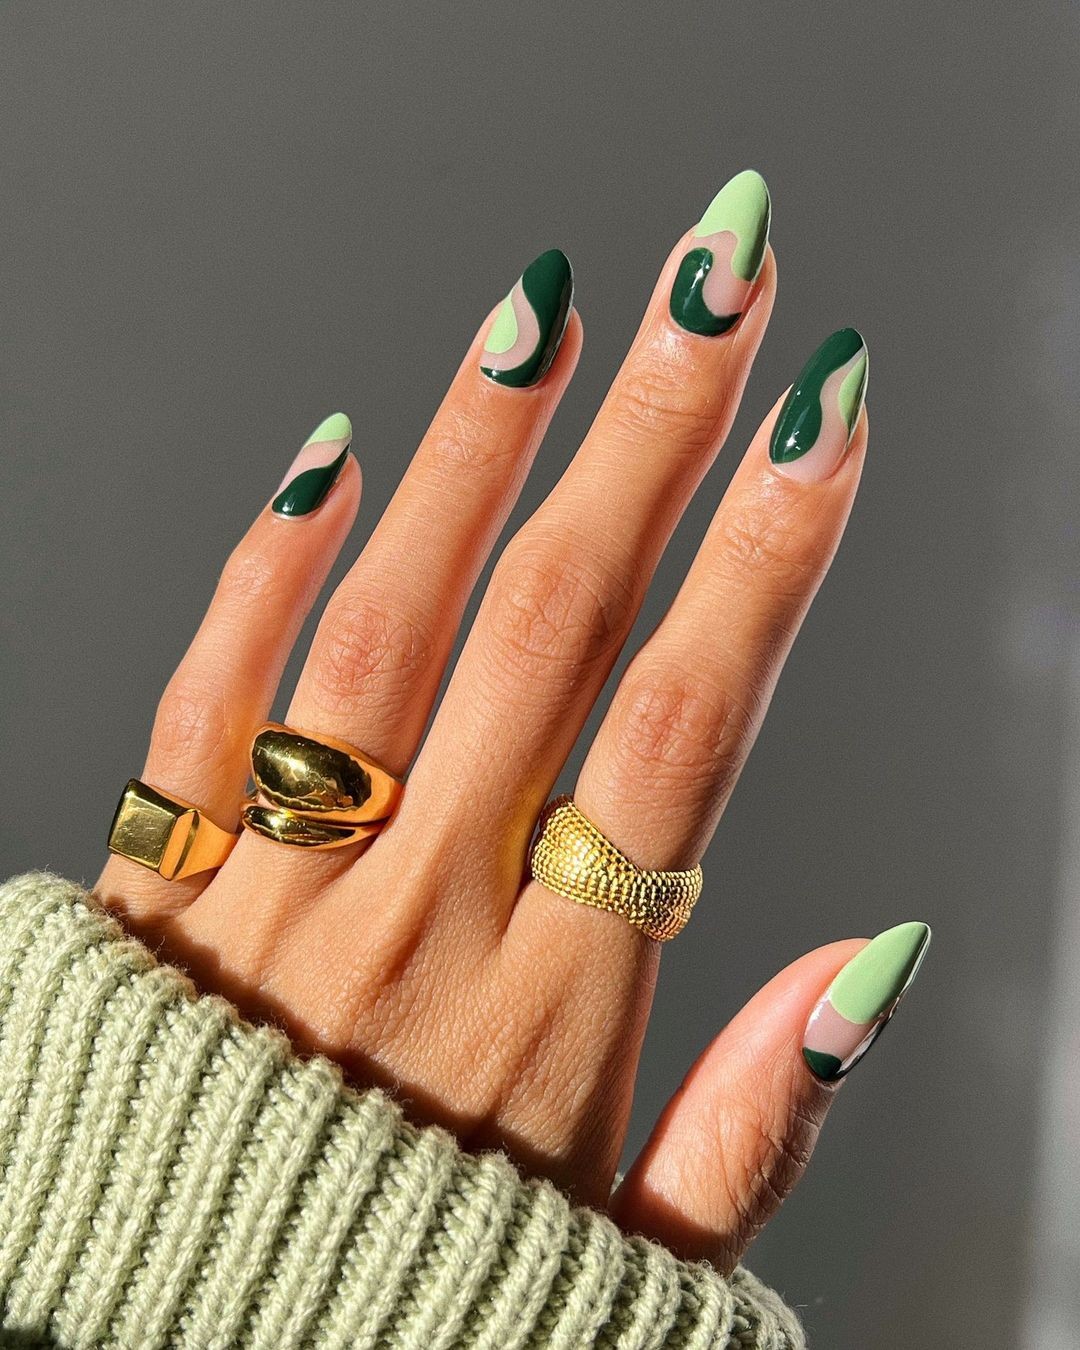 As cores de esmalte que são tendência para a nail art de inverno (Foto: Reprodução/Instagram)